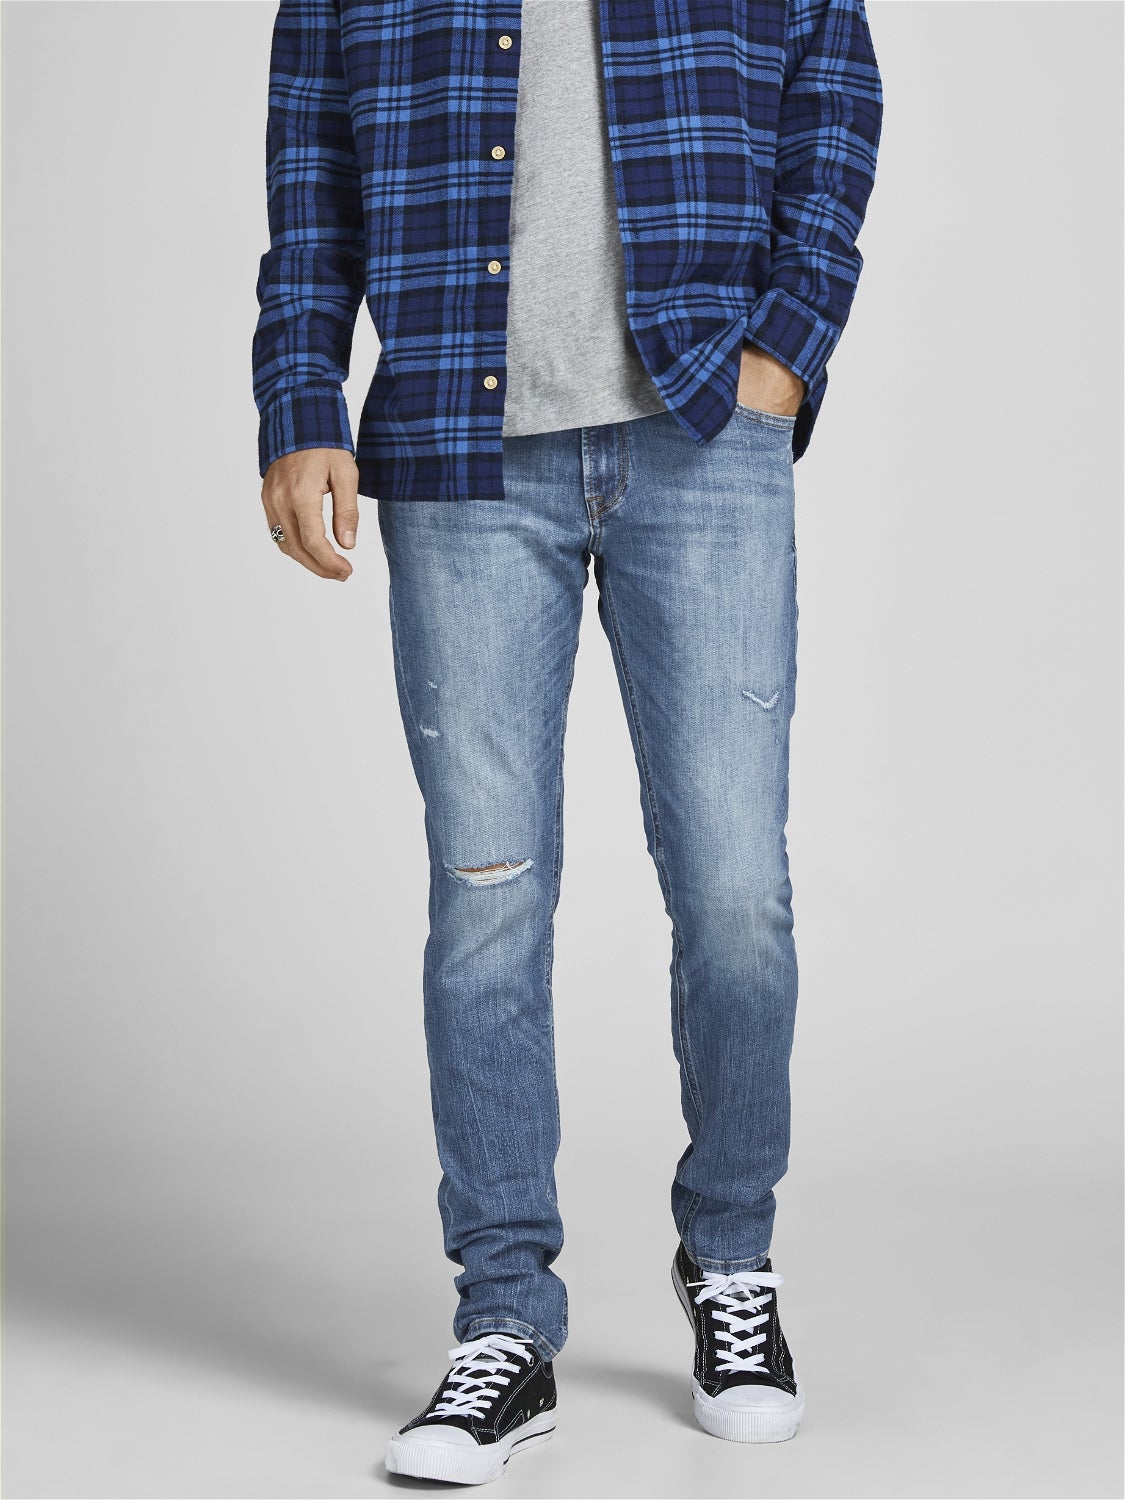 discount 57% Navy Blue L Jack & Jones capri jeans MEN FASHION Jeans Strech 